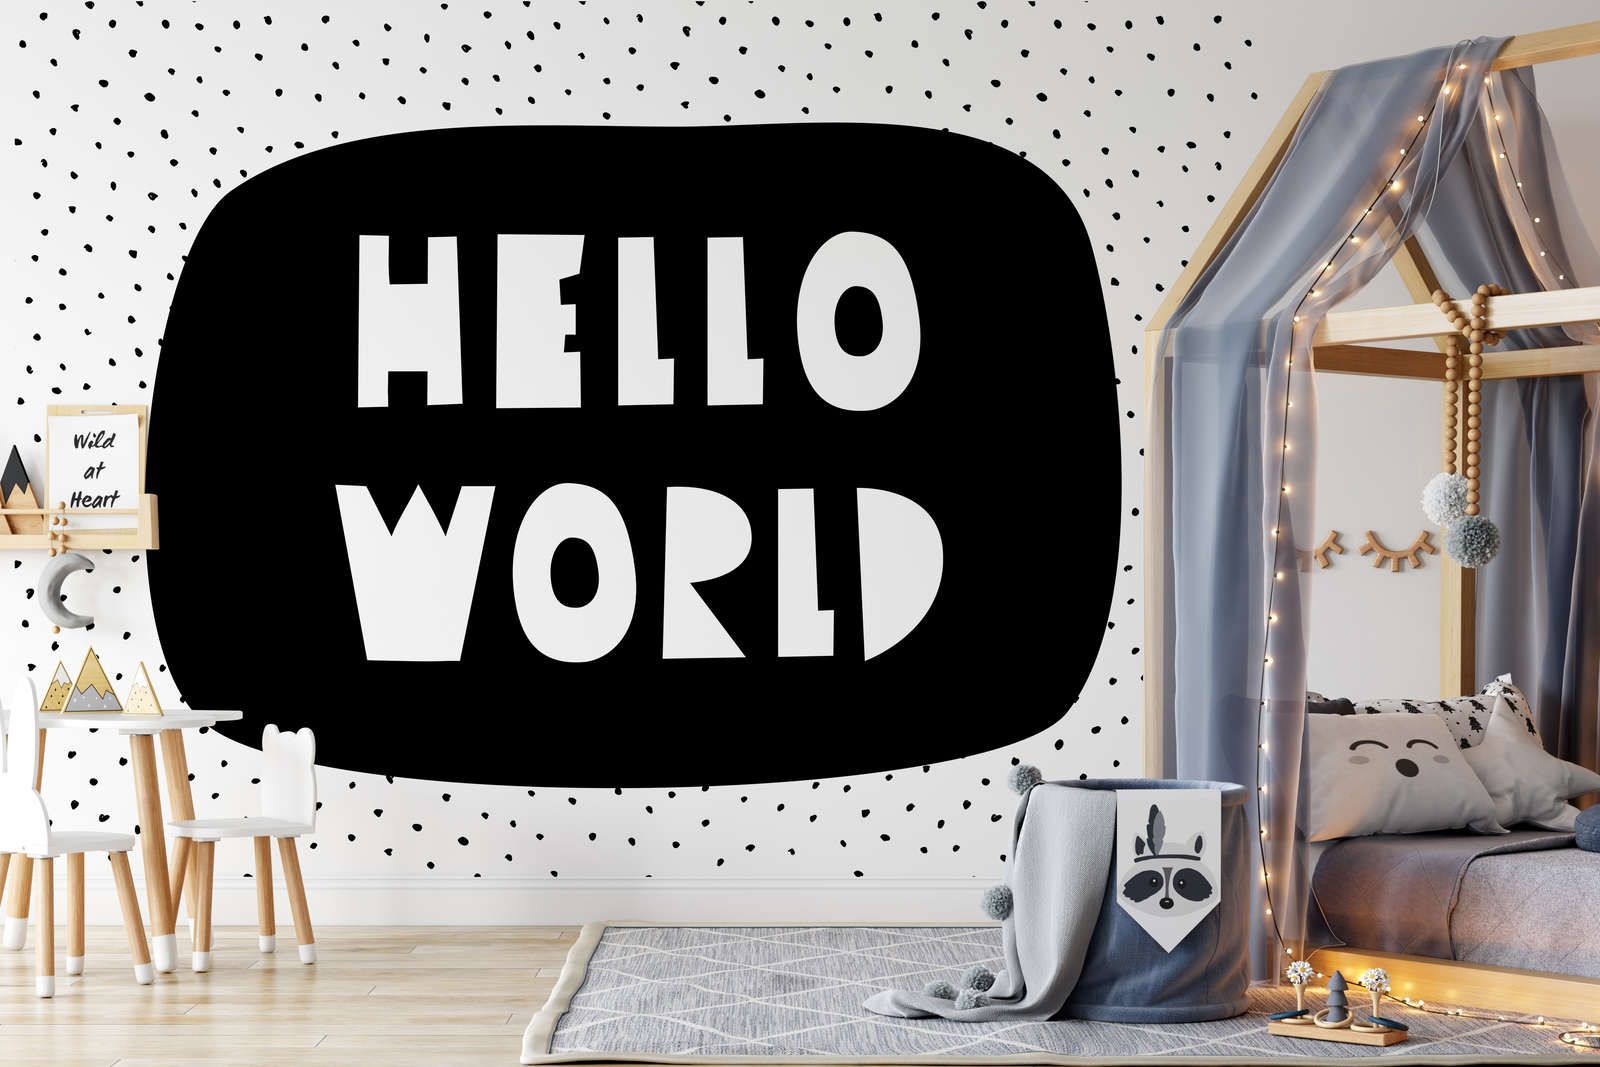             Fototapete fürs Kinderzimmer mit Schriftzug "Hello World" – Glattes & leicht glänzendes Vlies
        